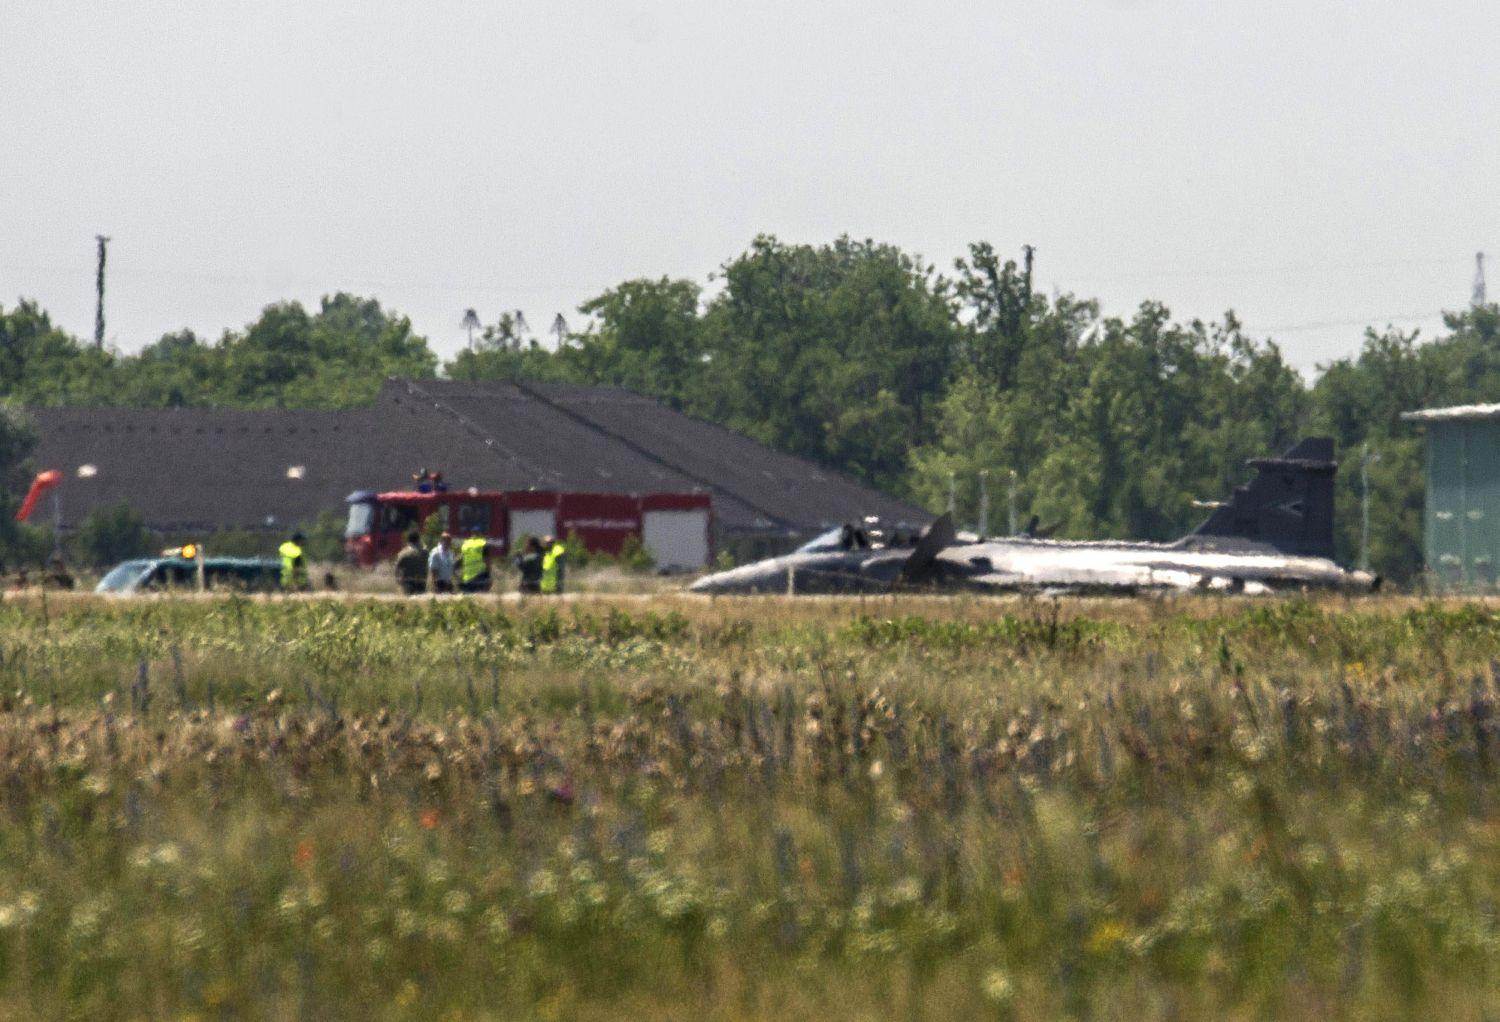 A Magyar Honvédség JAS-39 C Gripen típusú, kényszerleszállást végrehajtott repülőgépe a kecskeméti katonai repülőtéren 2015. június 10-én. A gépen a felszállás után a repülést veszélyeztető műszaki hiba lépett fel, ezért a pilóta megfelelő biztosítás